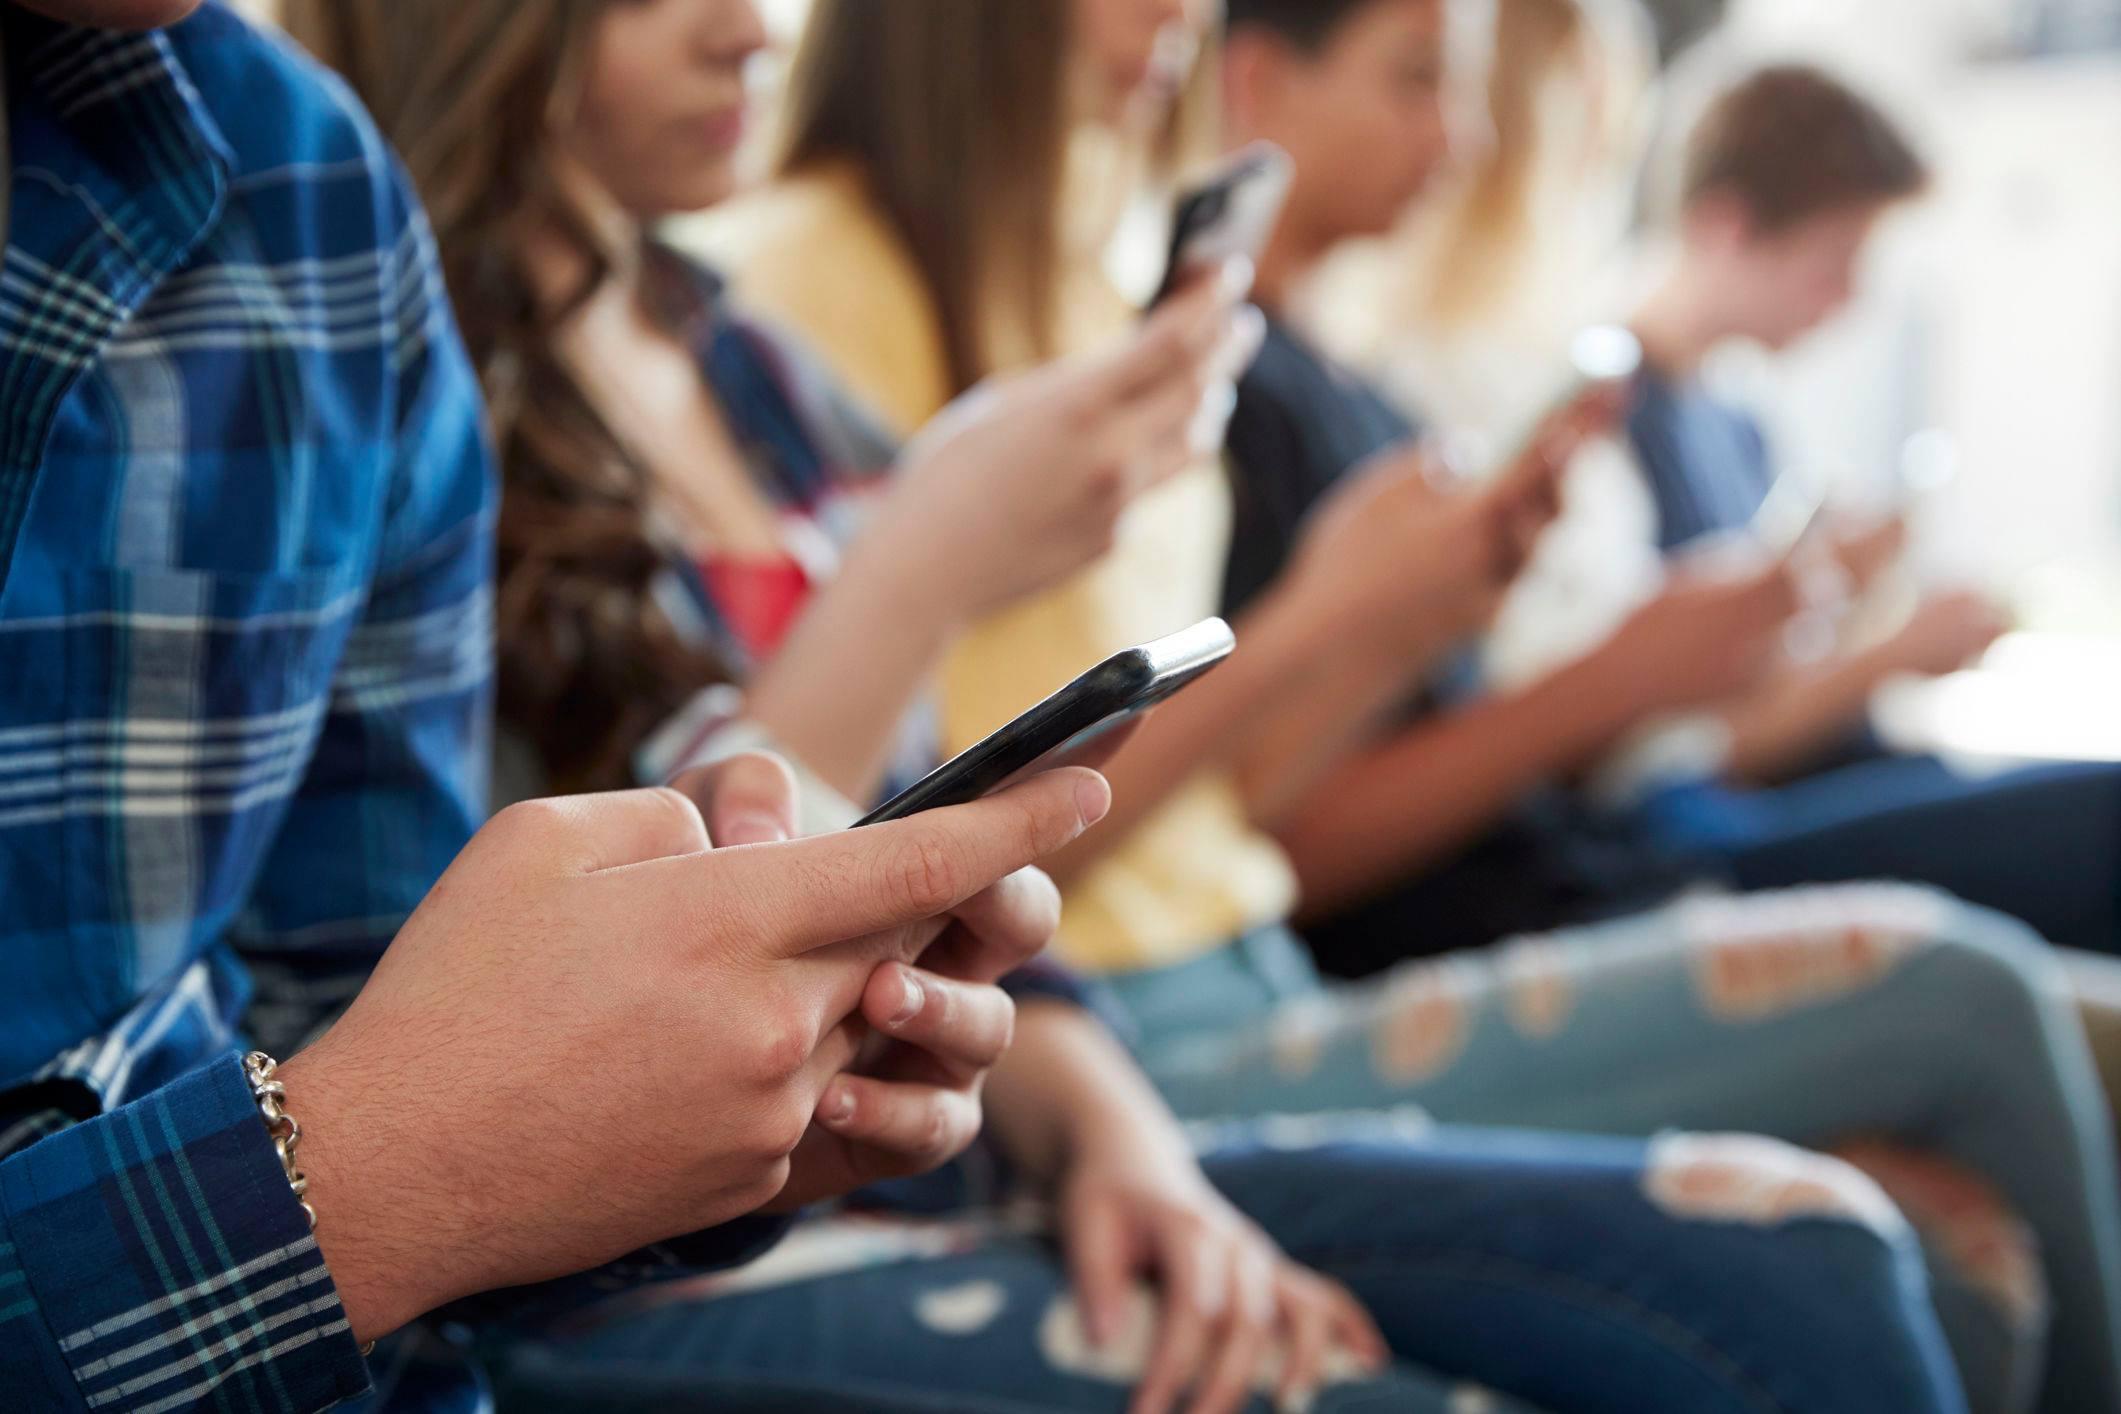 "Η ζωή μου είναι άδεια χωρίς το κινητό" - 'Έρευνα αποκαλύπτει την σχέση των εφήβων με τα κινητά